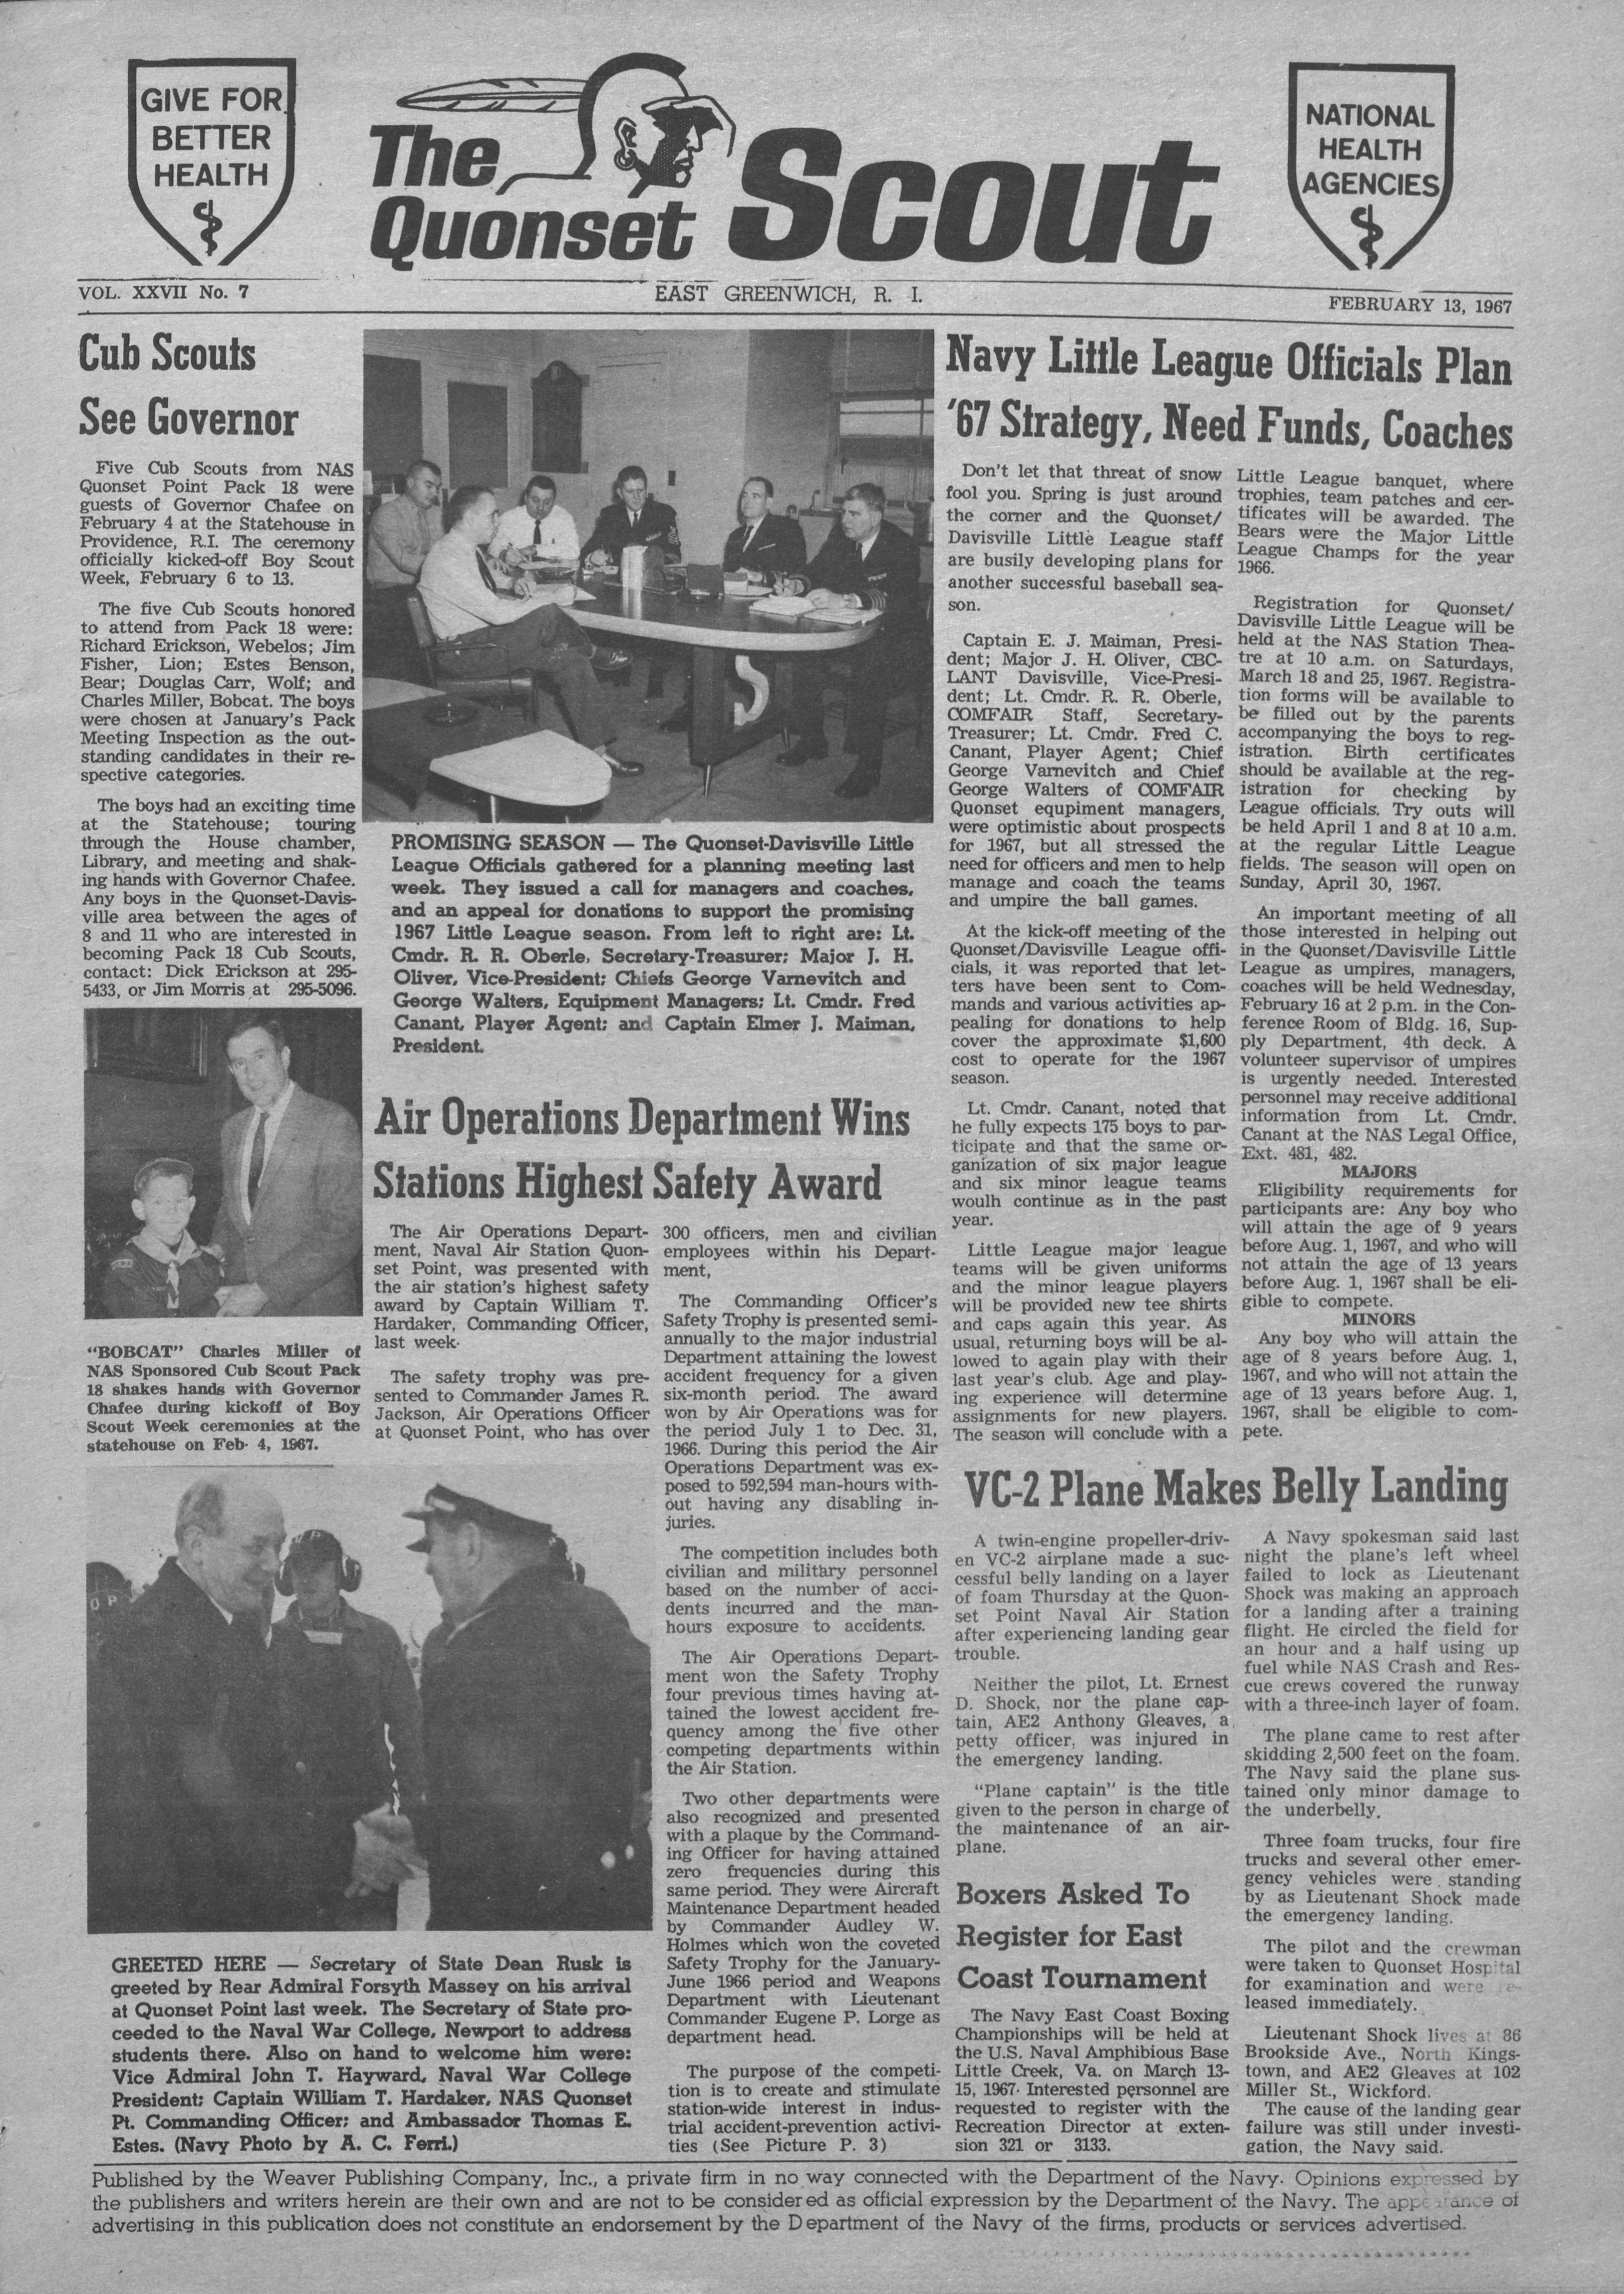 February 13, 1967